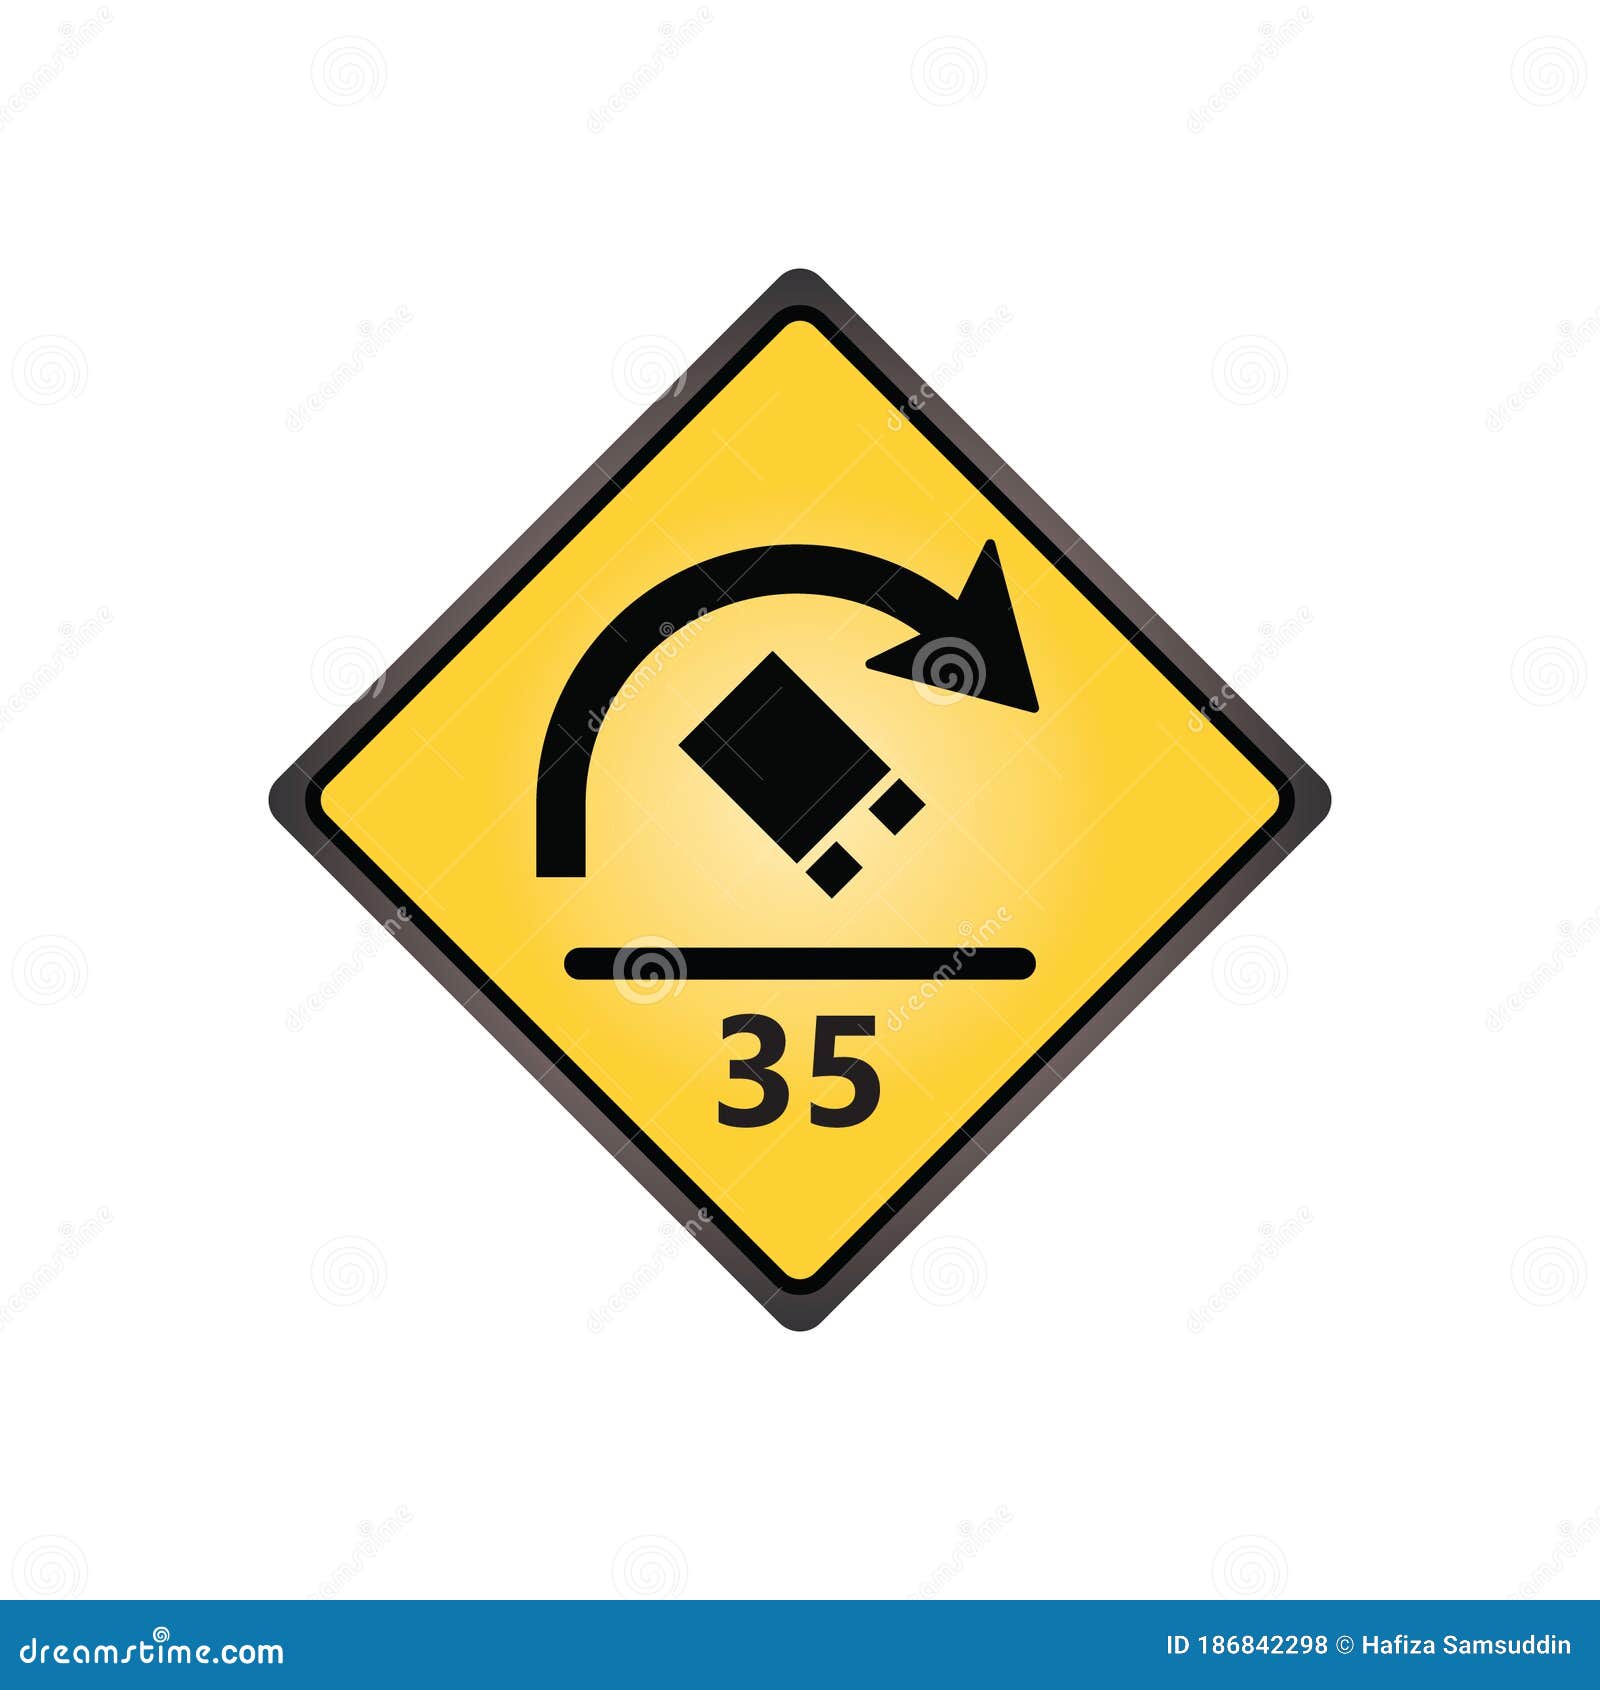 Truck Rollover Warning For Sharp Curves Sign Vector Illustration